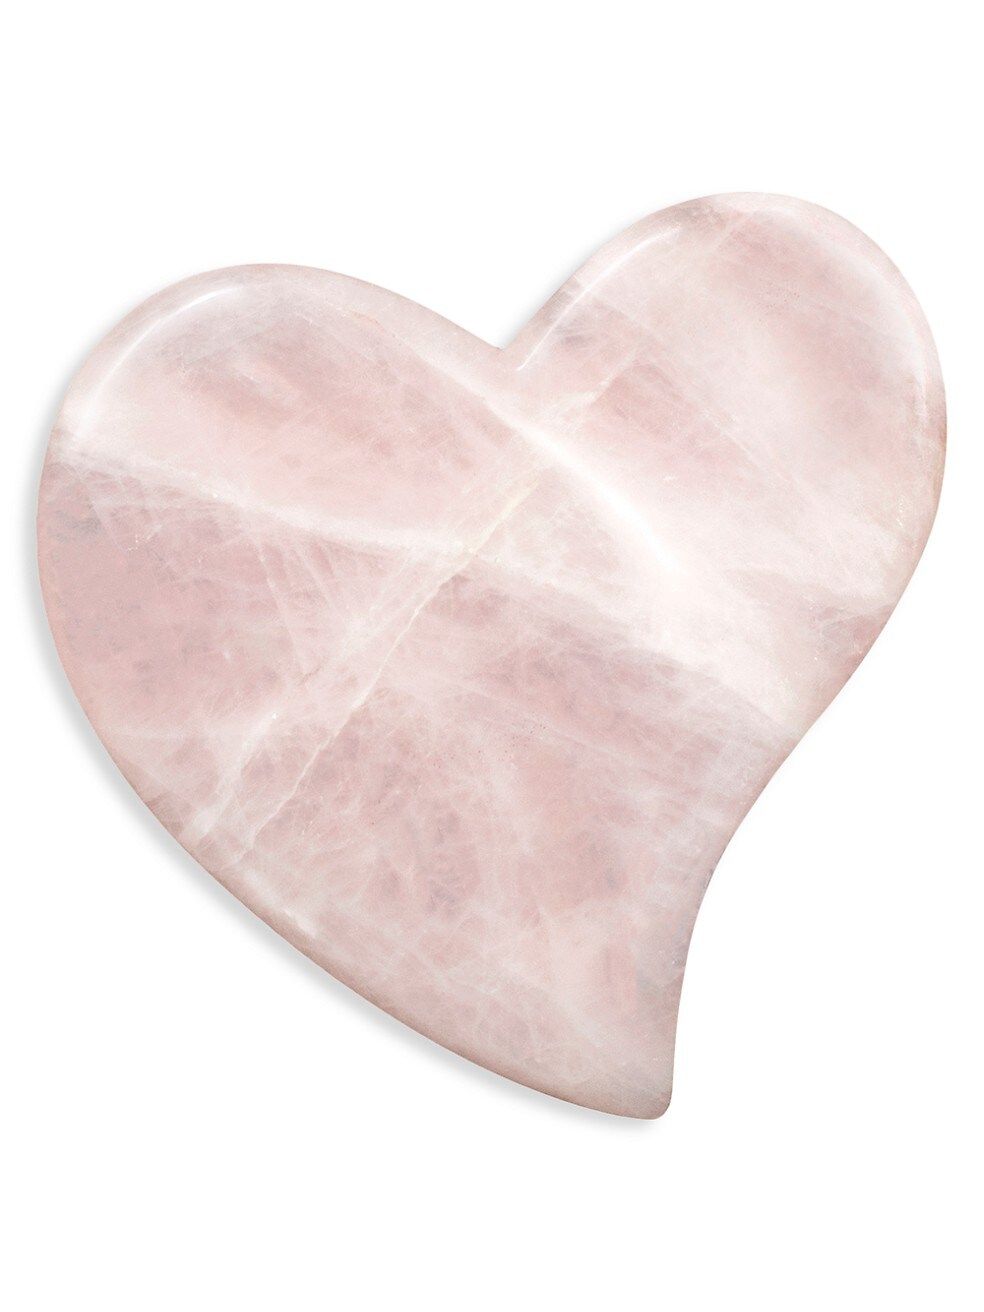 Jenny Patinkin Uplifting Rose Quartz Heart Gua Sha | Saks Fifth Avenue